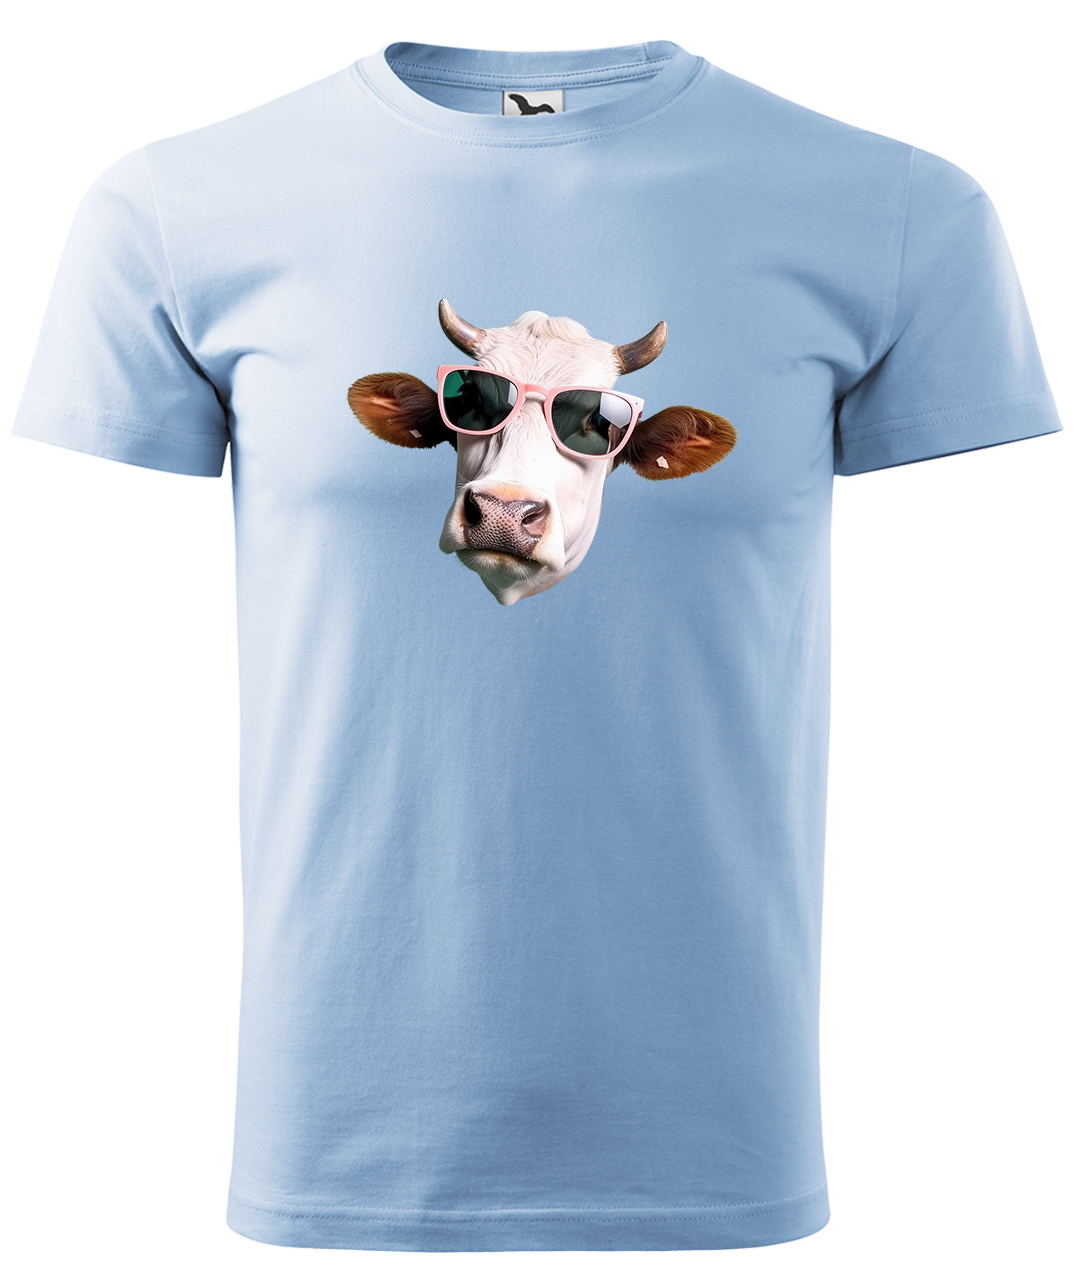 Dětské tričko s krávou - Kráva v brýlích Velikost: 4 roky / 110 cm, Barva: Nebesky modrá (15), Délka rukávu: Krátký rukáv